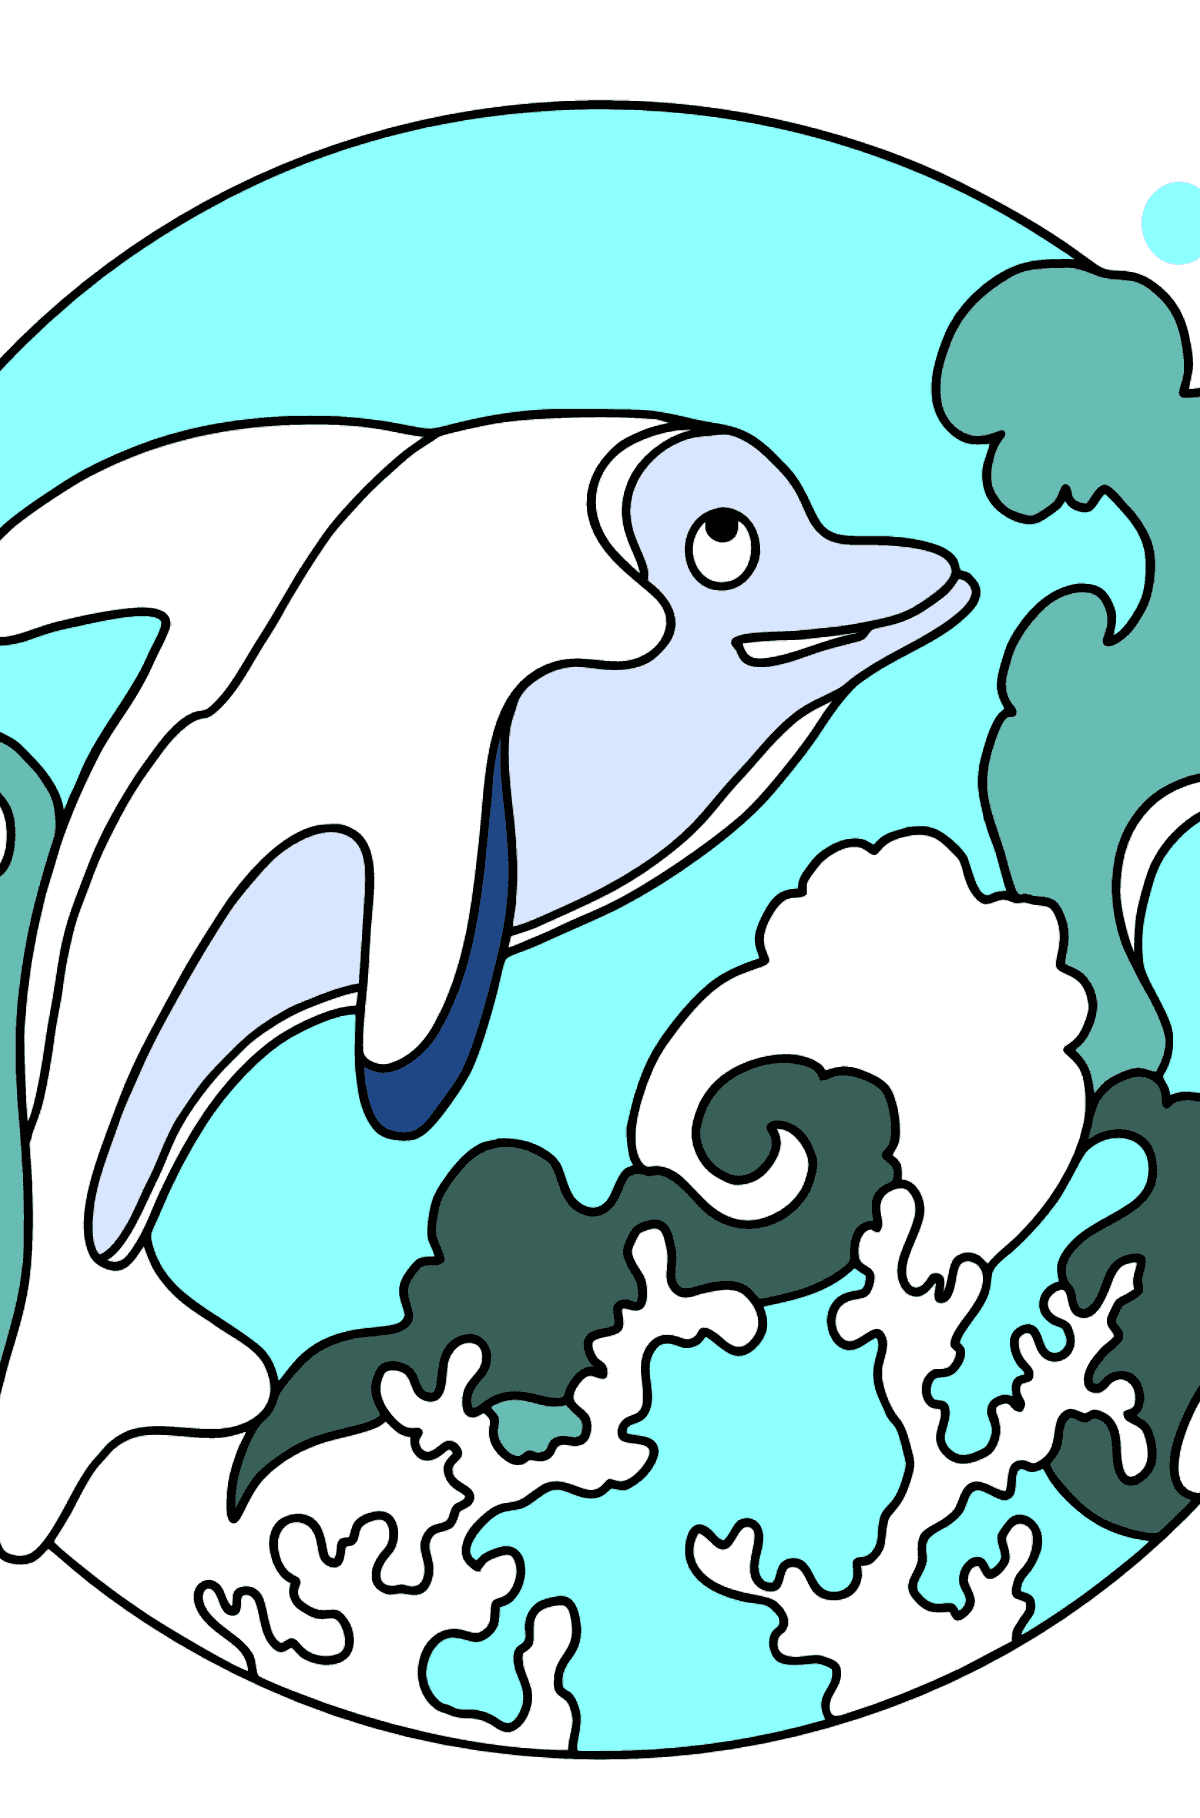 Malvorlage - Ein Delphin, ein wissbegieriges Tier - Malvorlagen für Kinder